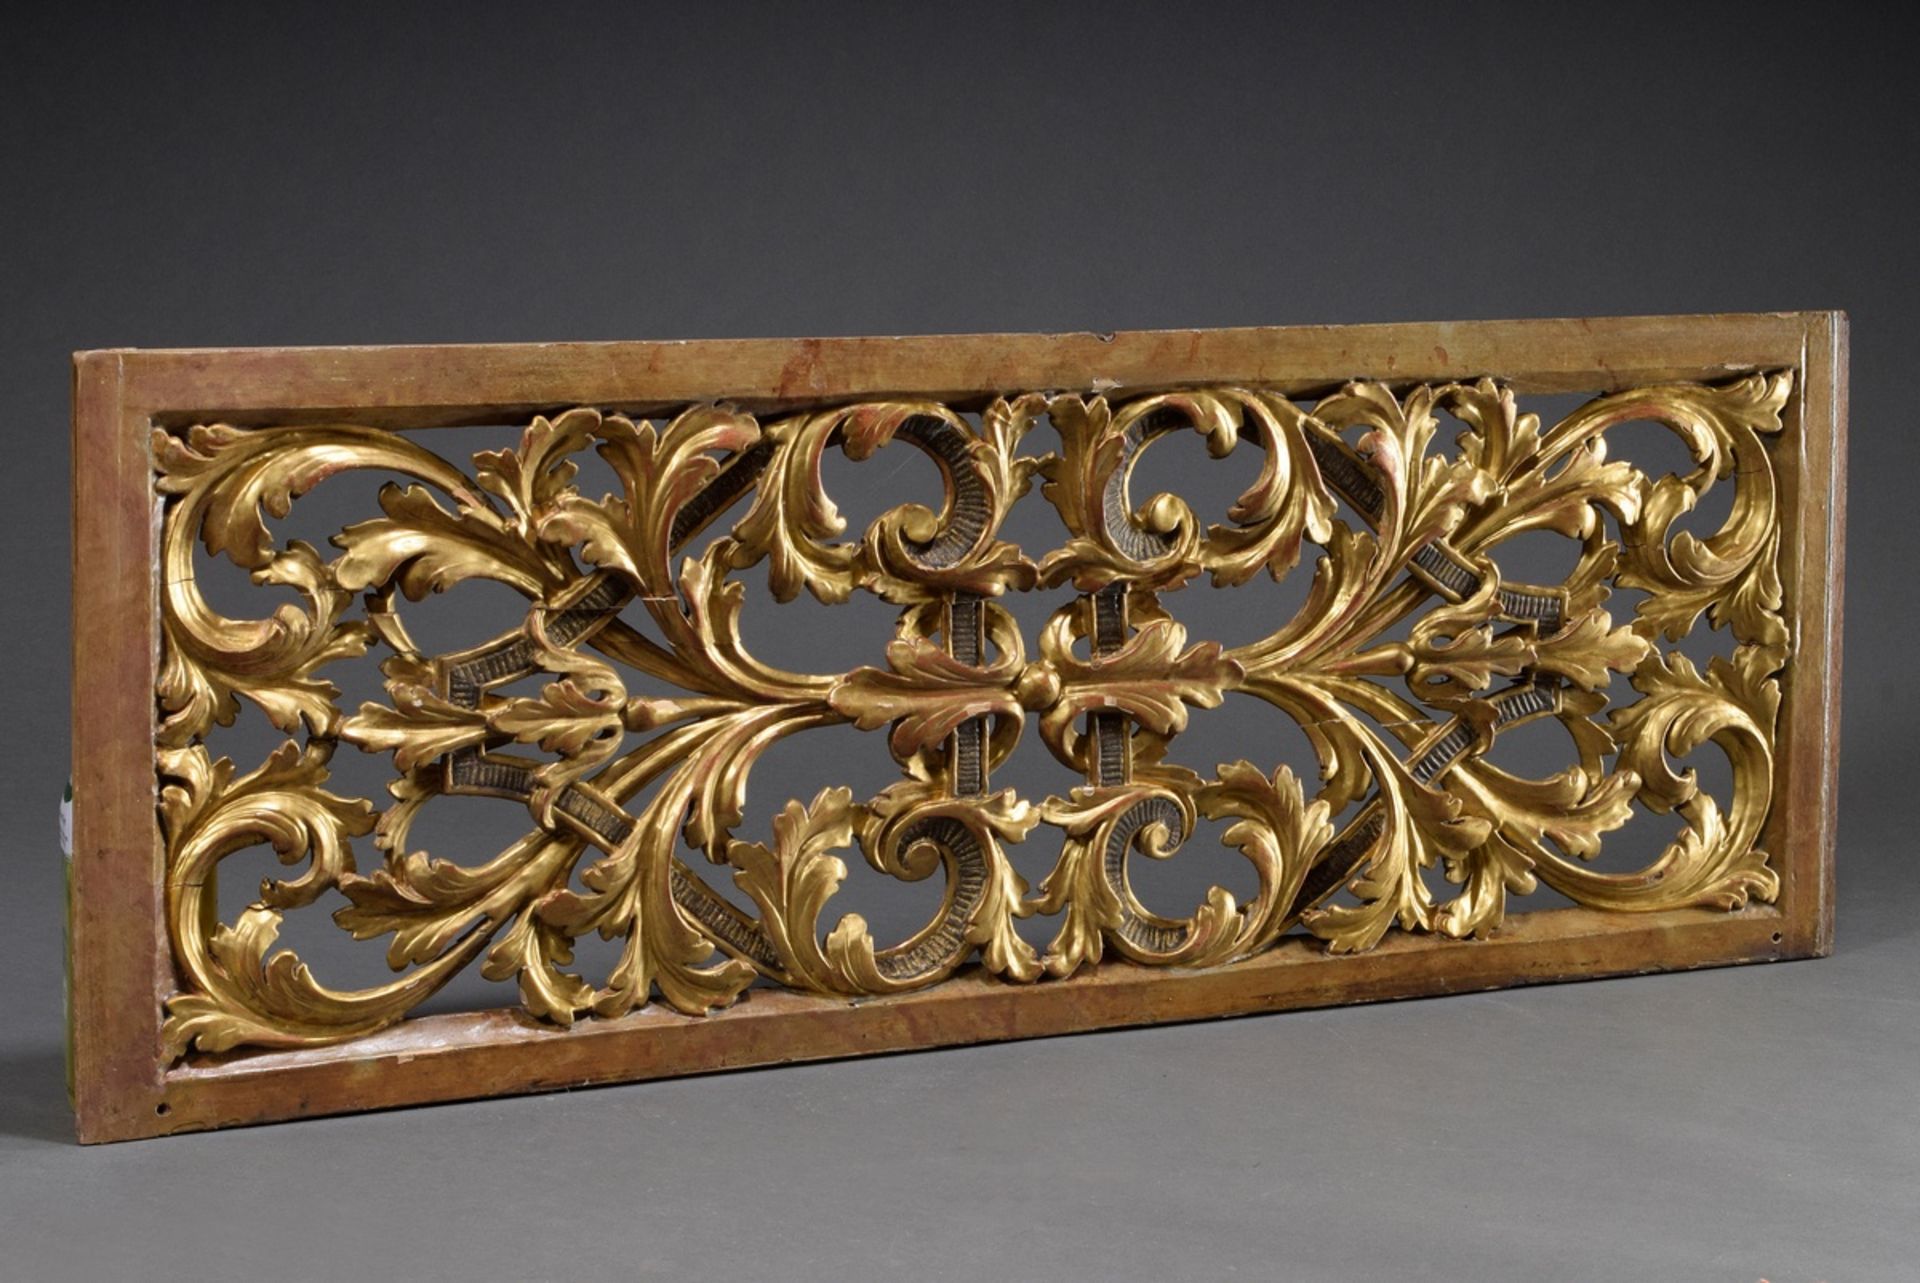 Rechteckige Gitterschnitzerei mit Blattvoluten und Streifenbändern, Holz vergoldet, 101,5x37cm, Spa